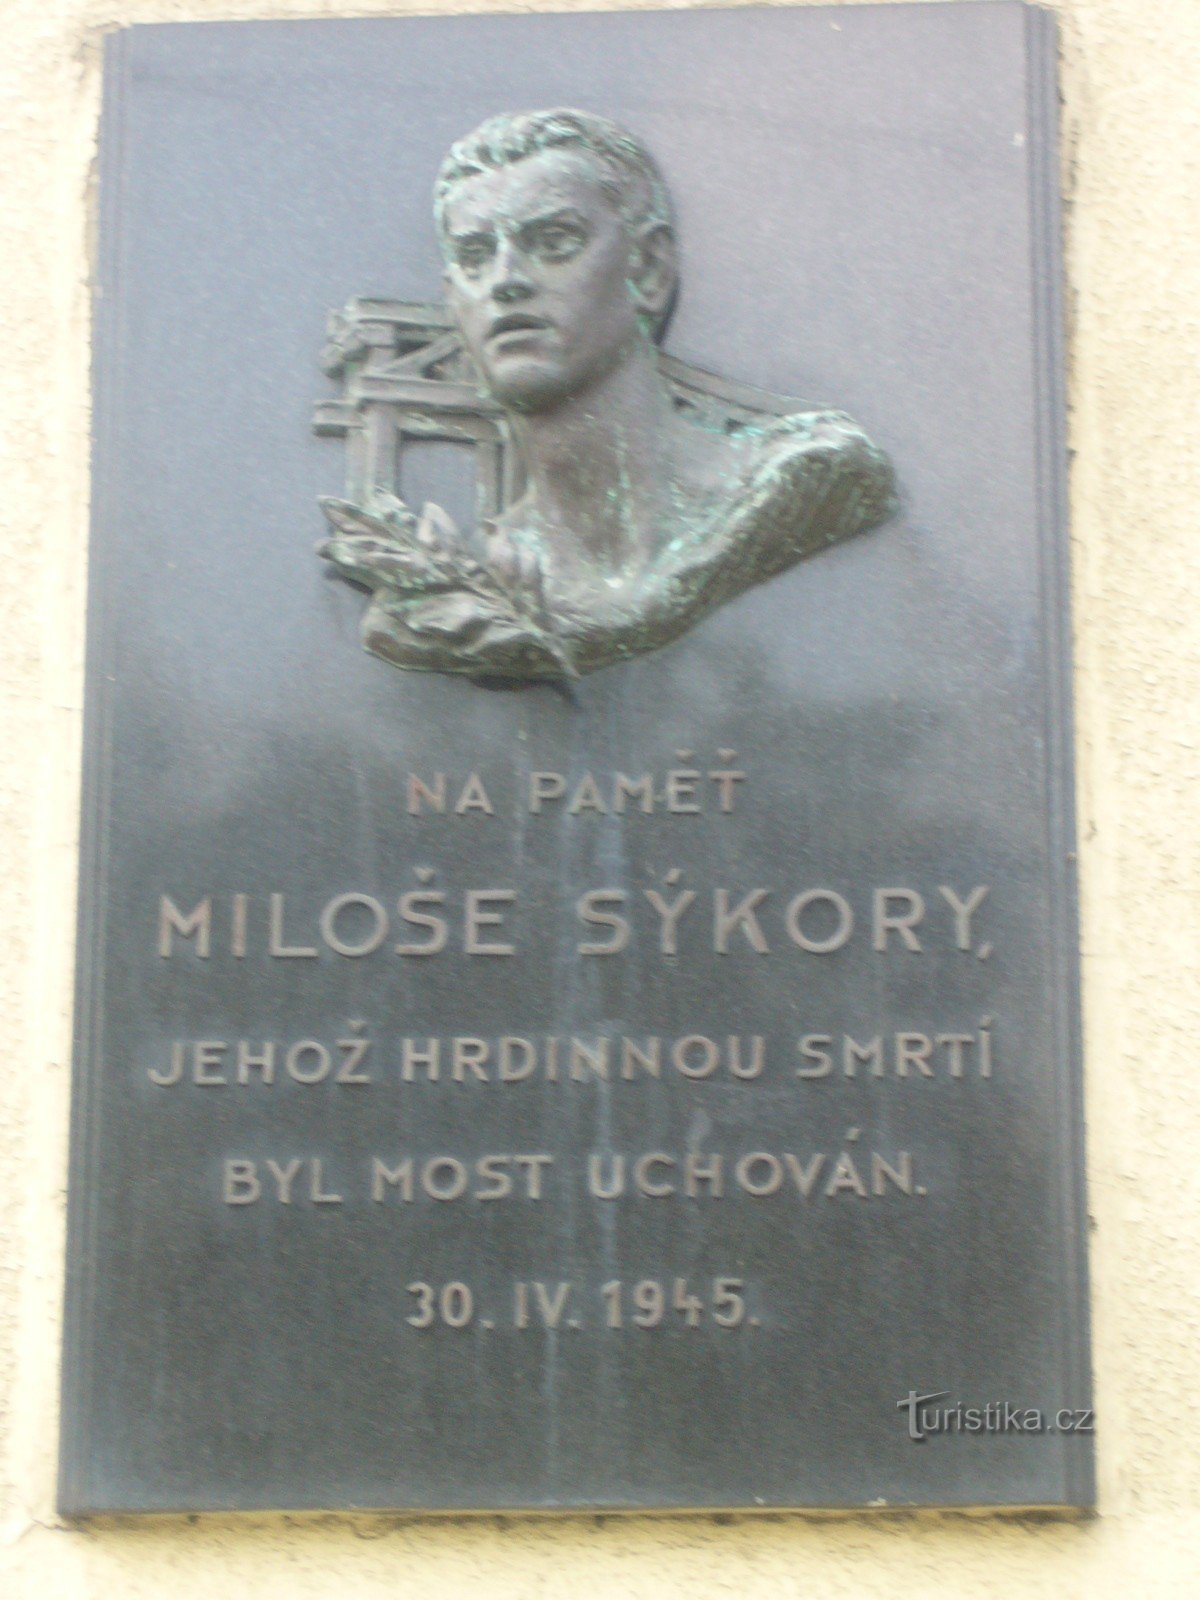 Памятник Милошу Сикоре